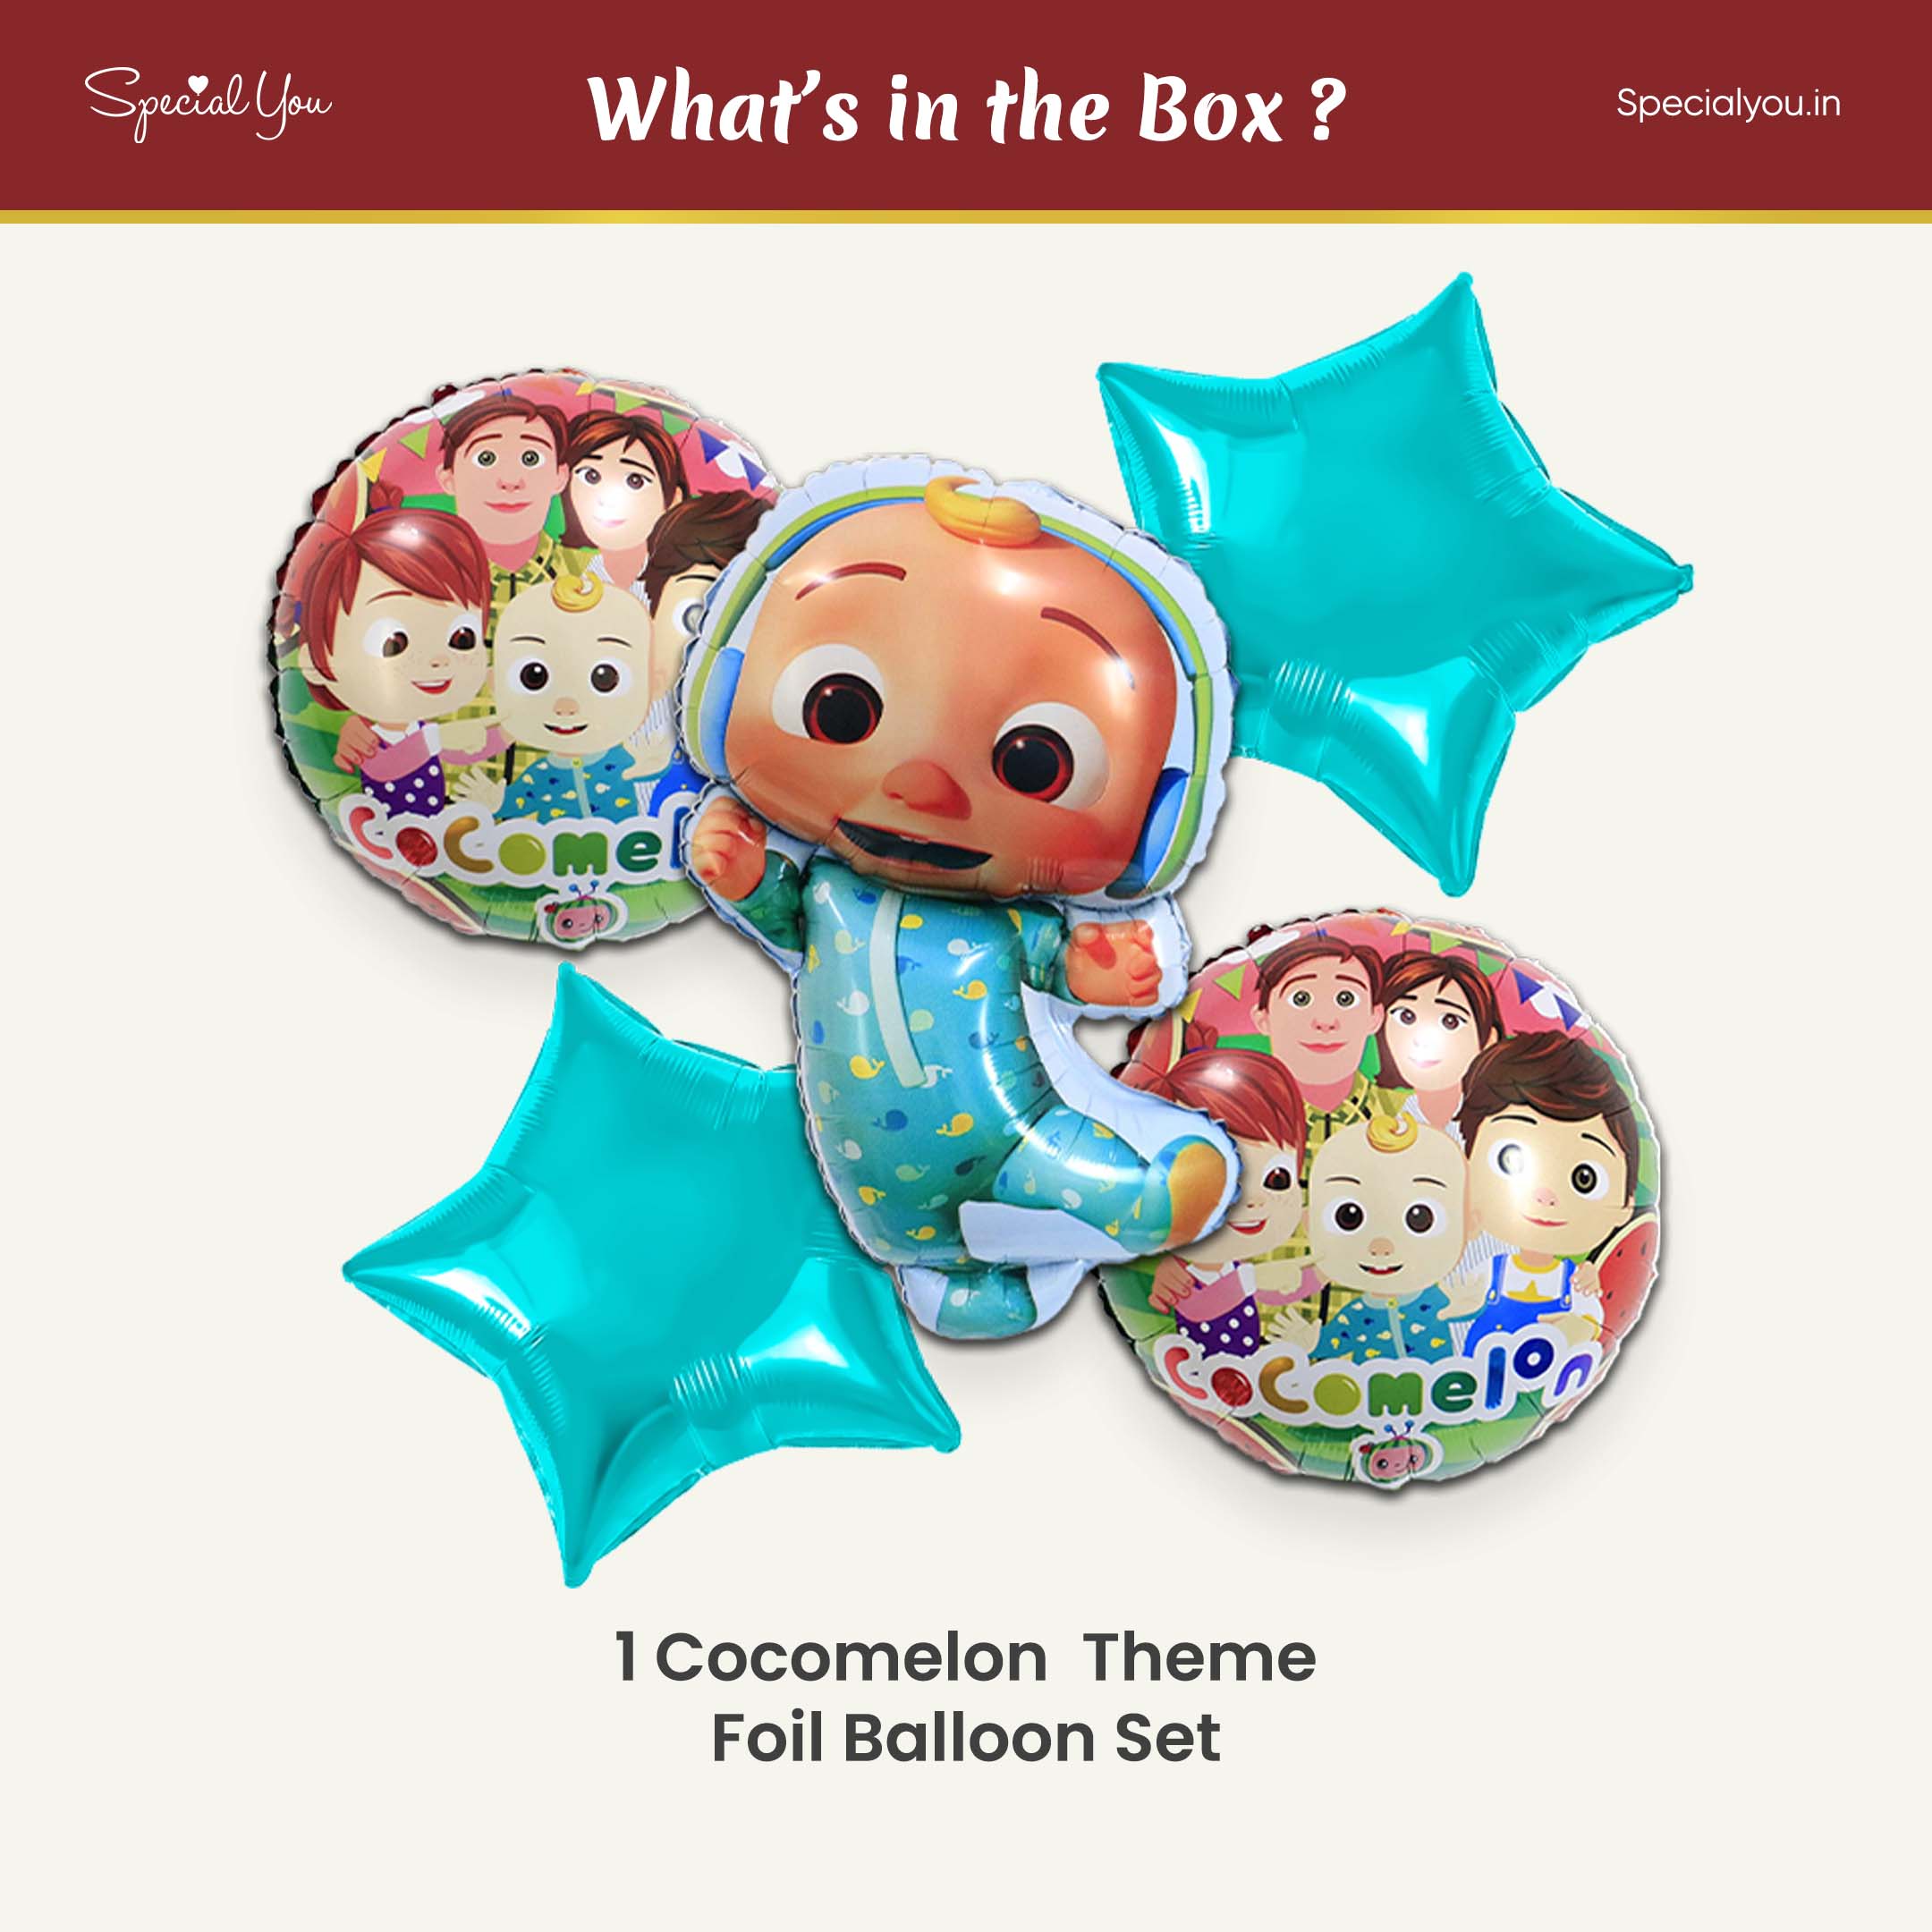 Coco Melon Foil Balloon set